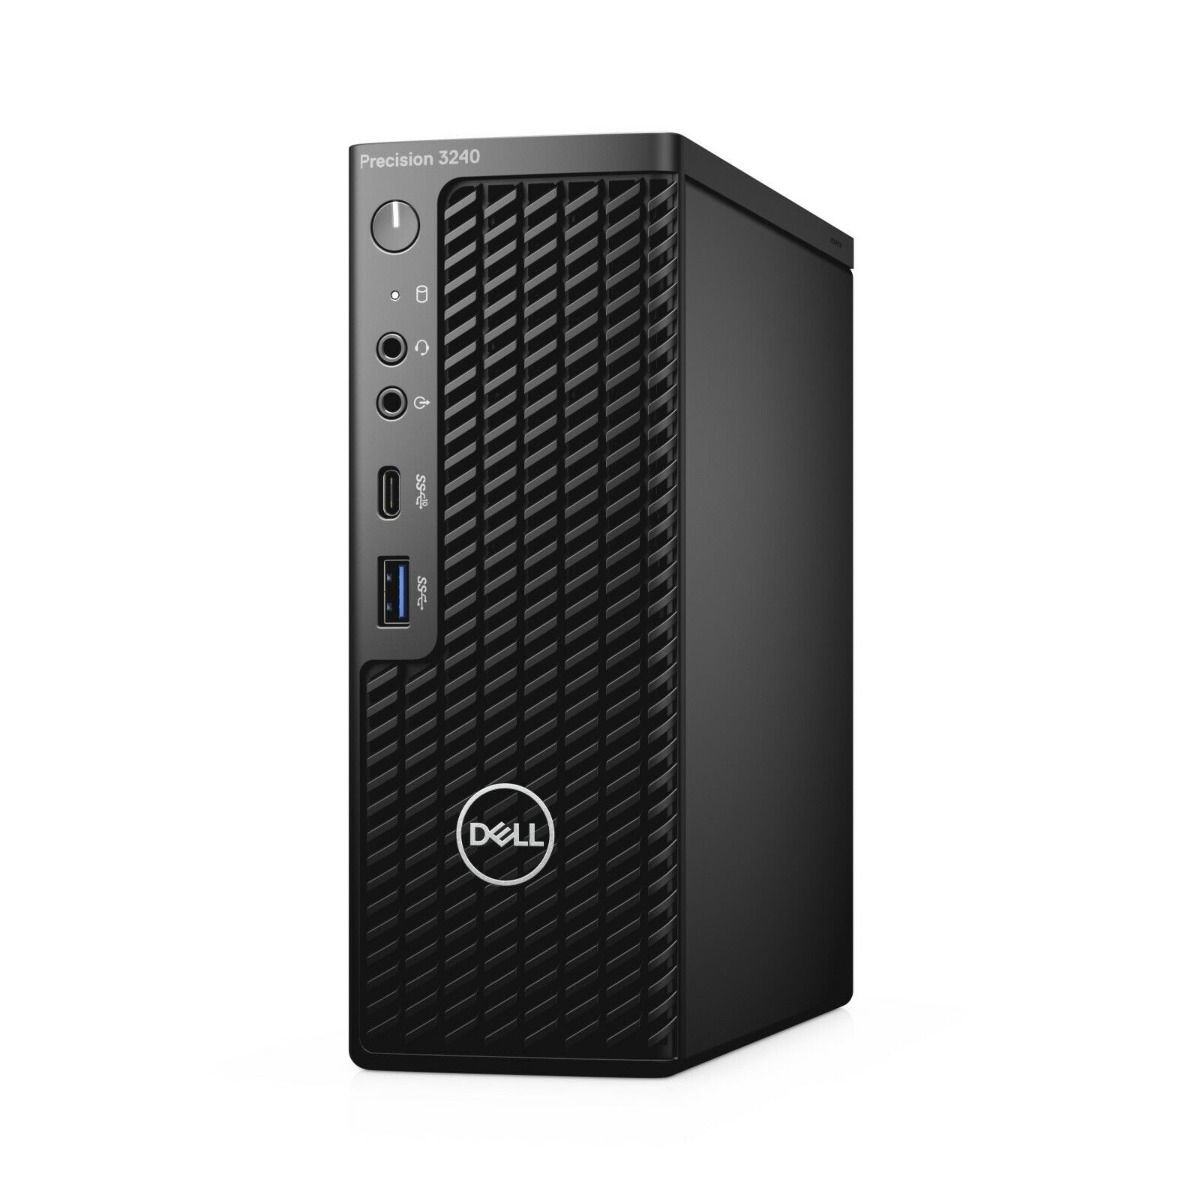 Dell Precision 3240 USFF Business Desktop PC Intel Core i7 16GB 512GB SSD Black